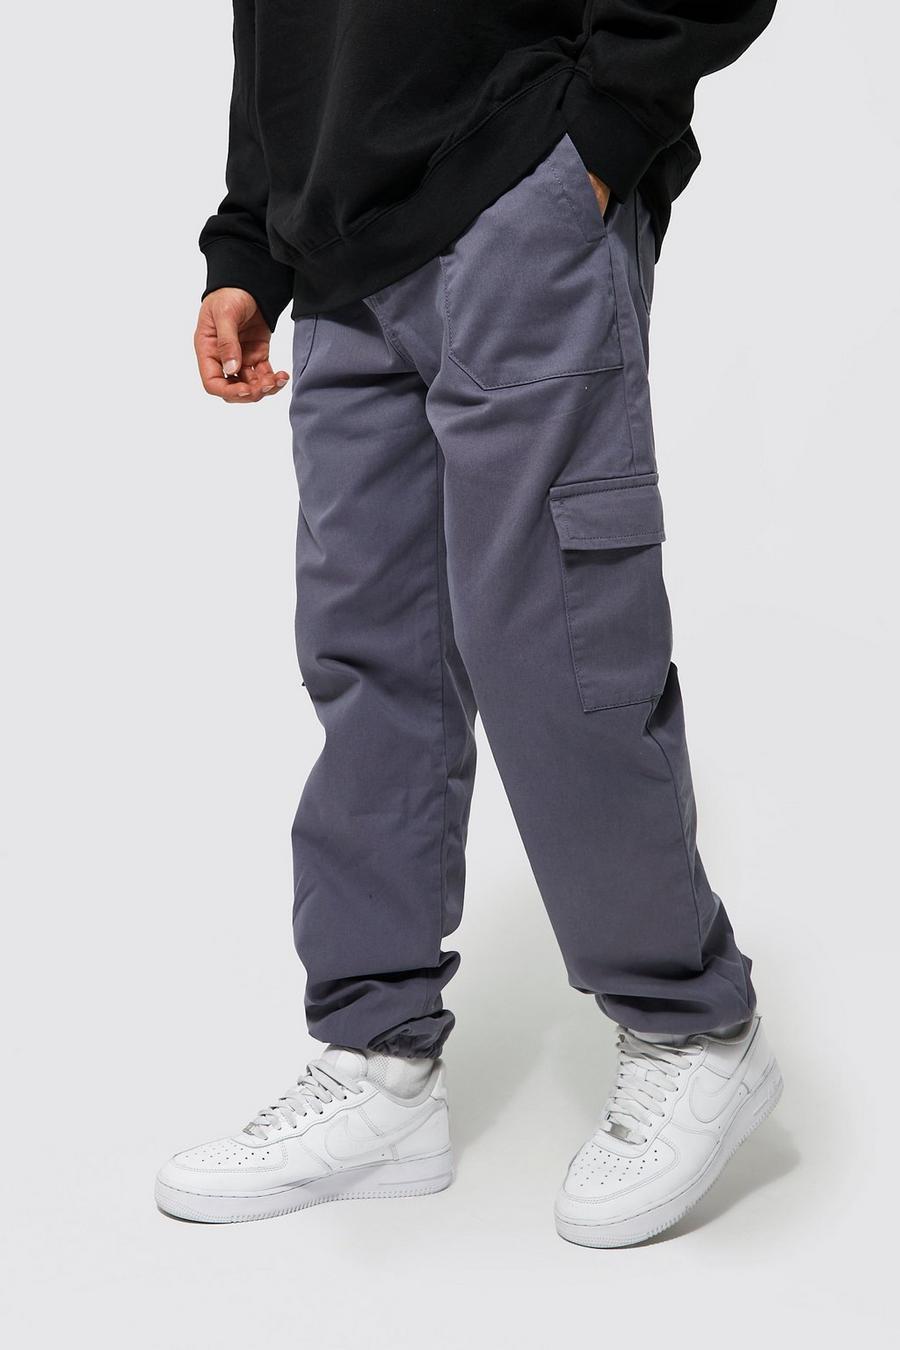 אפור כהה gris מכנסי דגמ'ח טוויל עם כיסים מרובים ושרוכי בנג'י